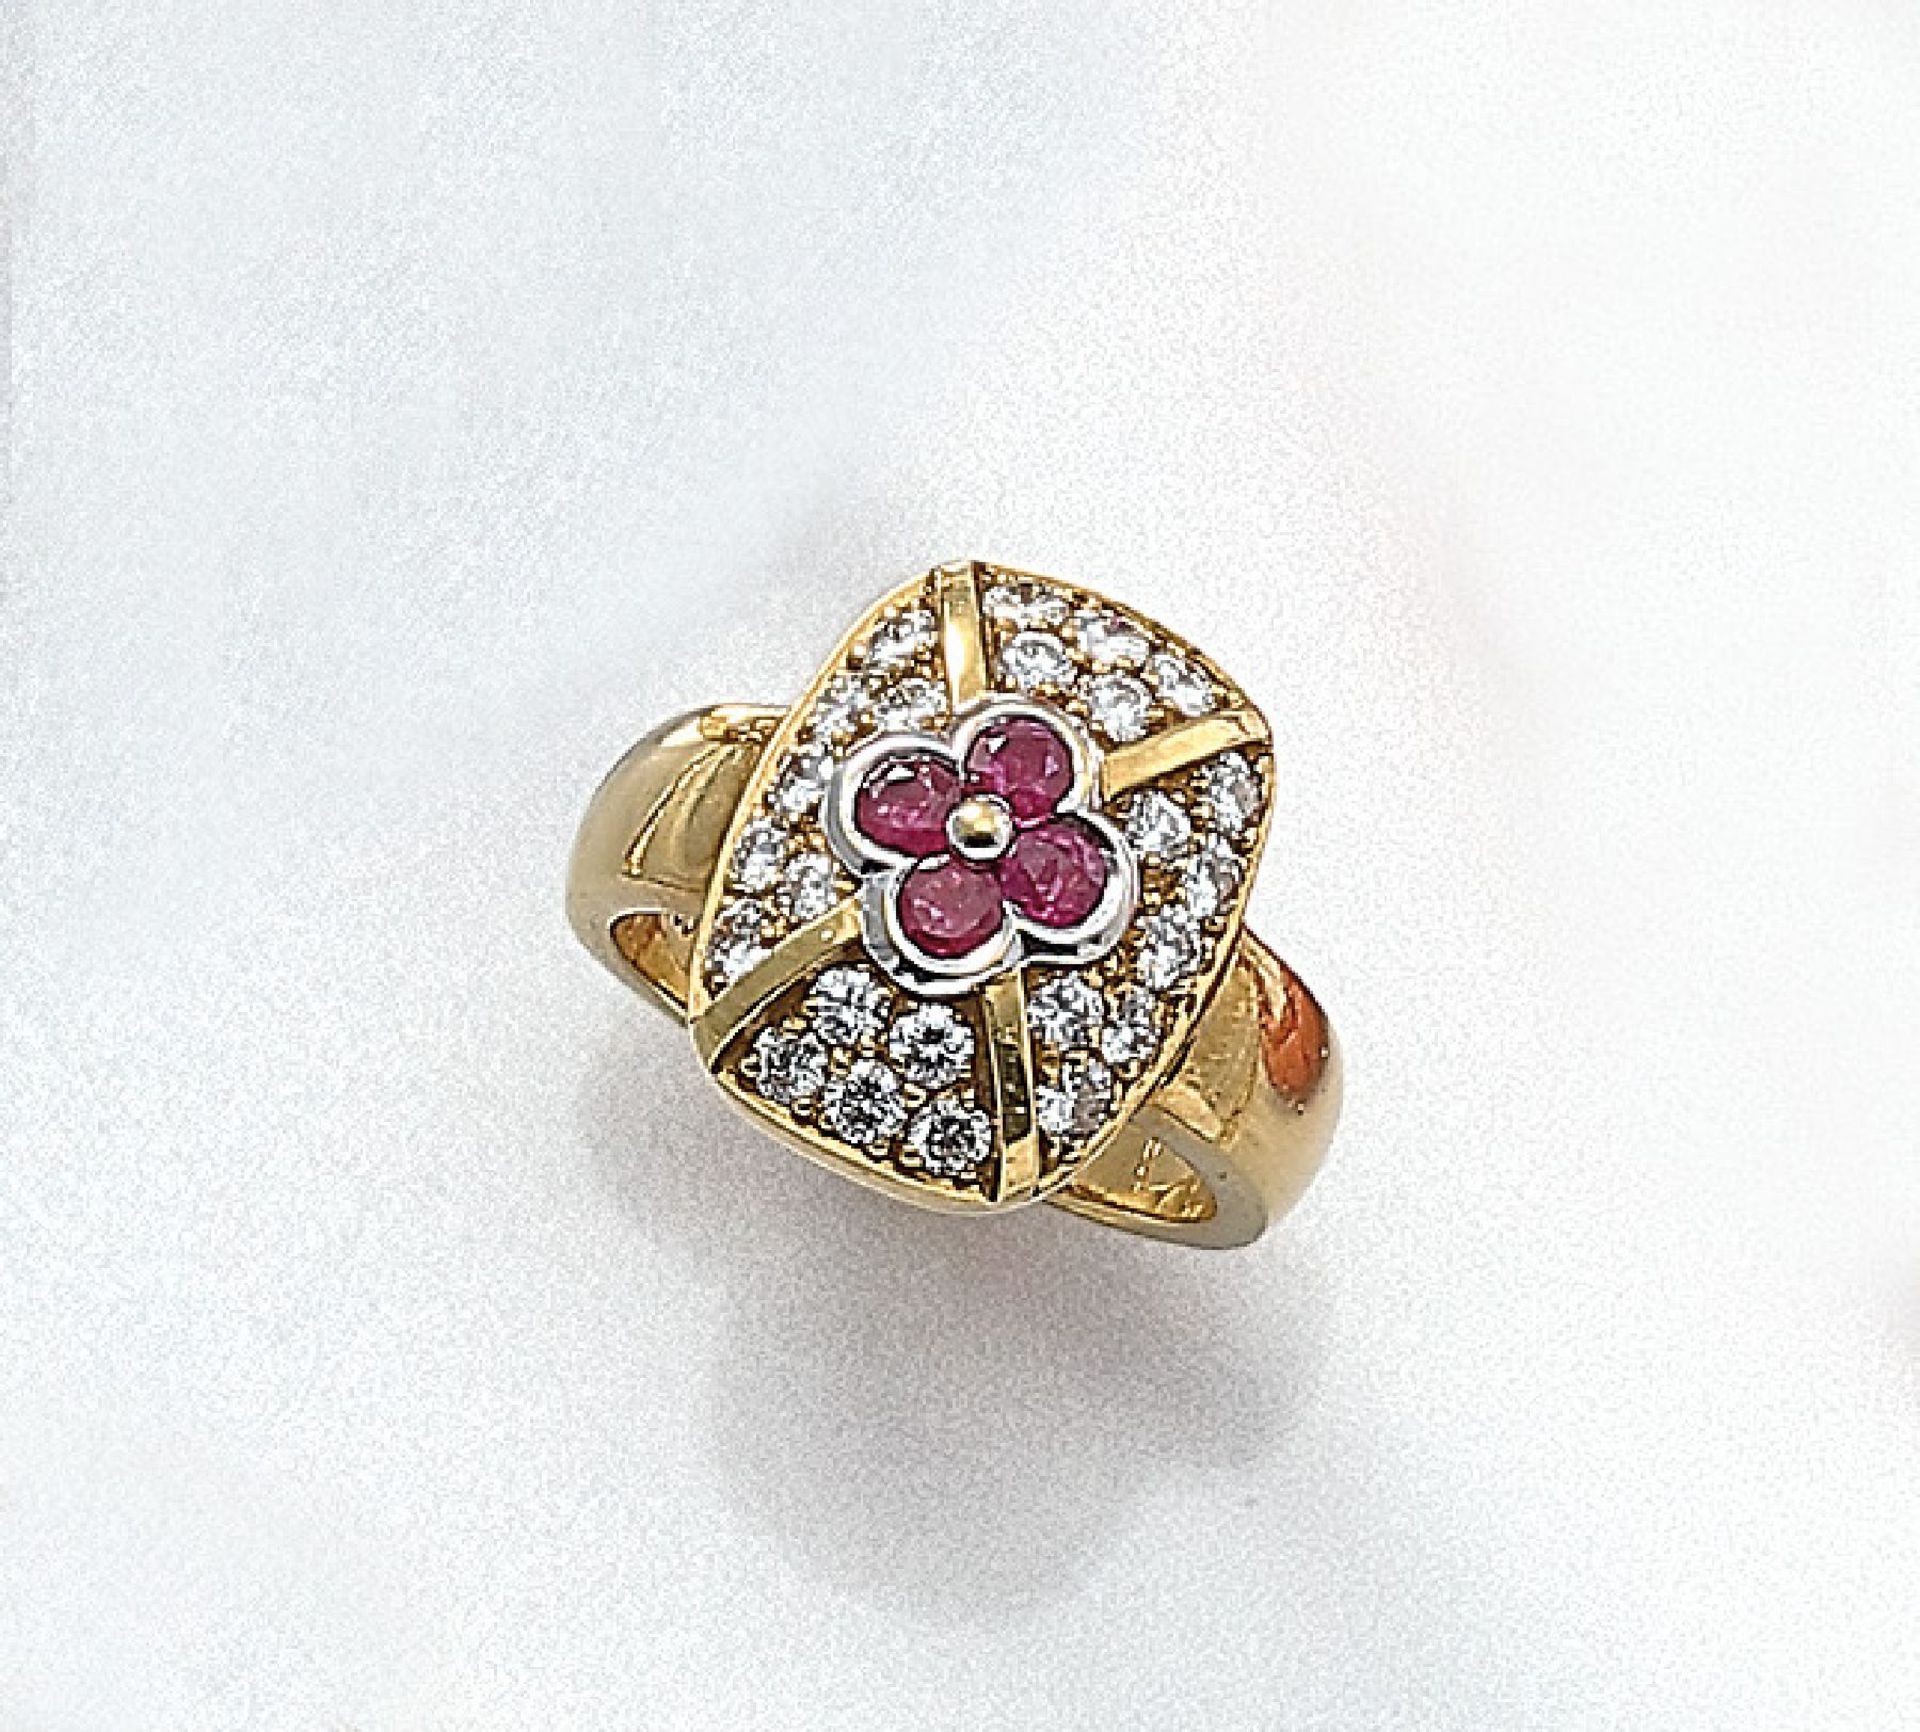 18 kt Gold Ring mit Rubinen und Brillanten, GG 750/000, 4 rundfacett. Rubine zus. ca. 0.30ct, 24